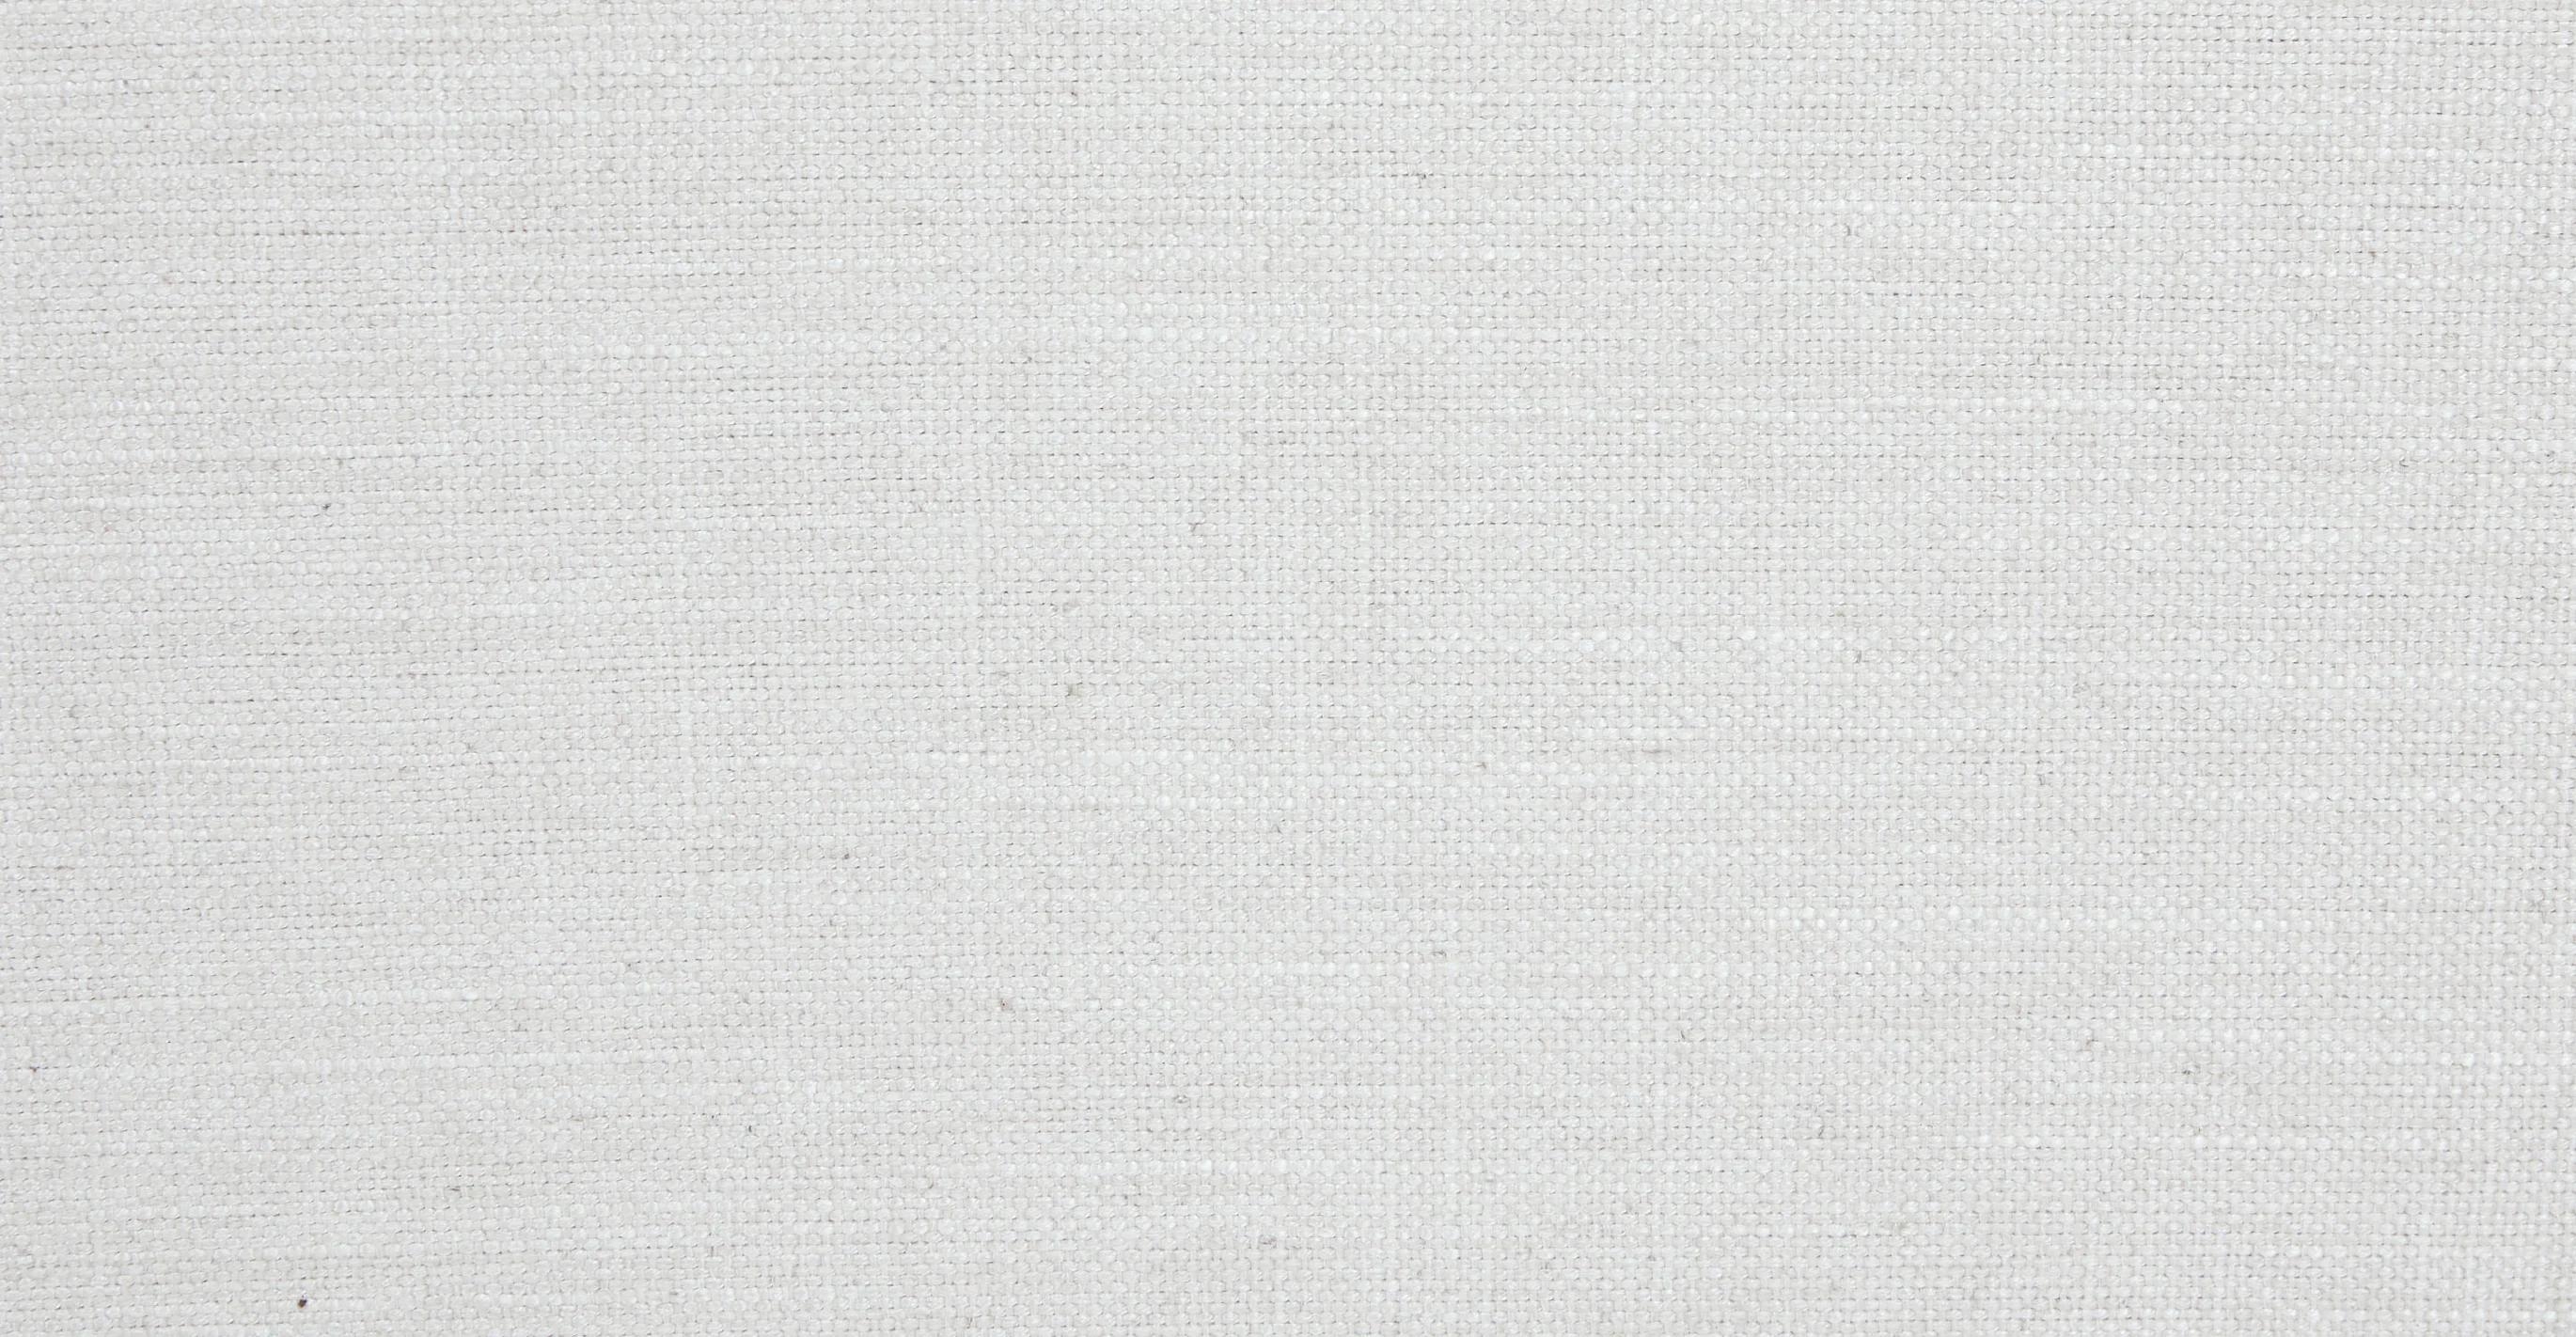 Sitka Sofa, Quartz White - Image 6